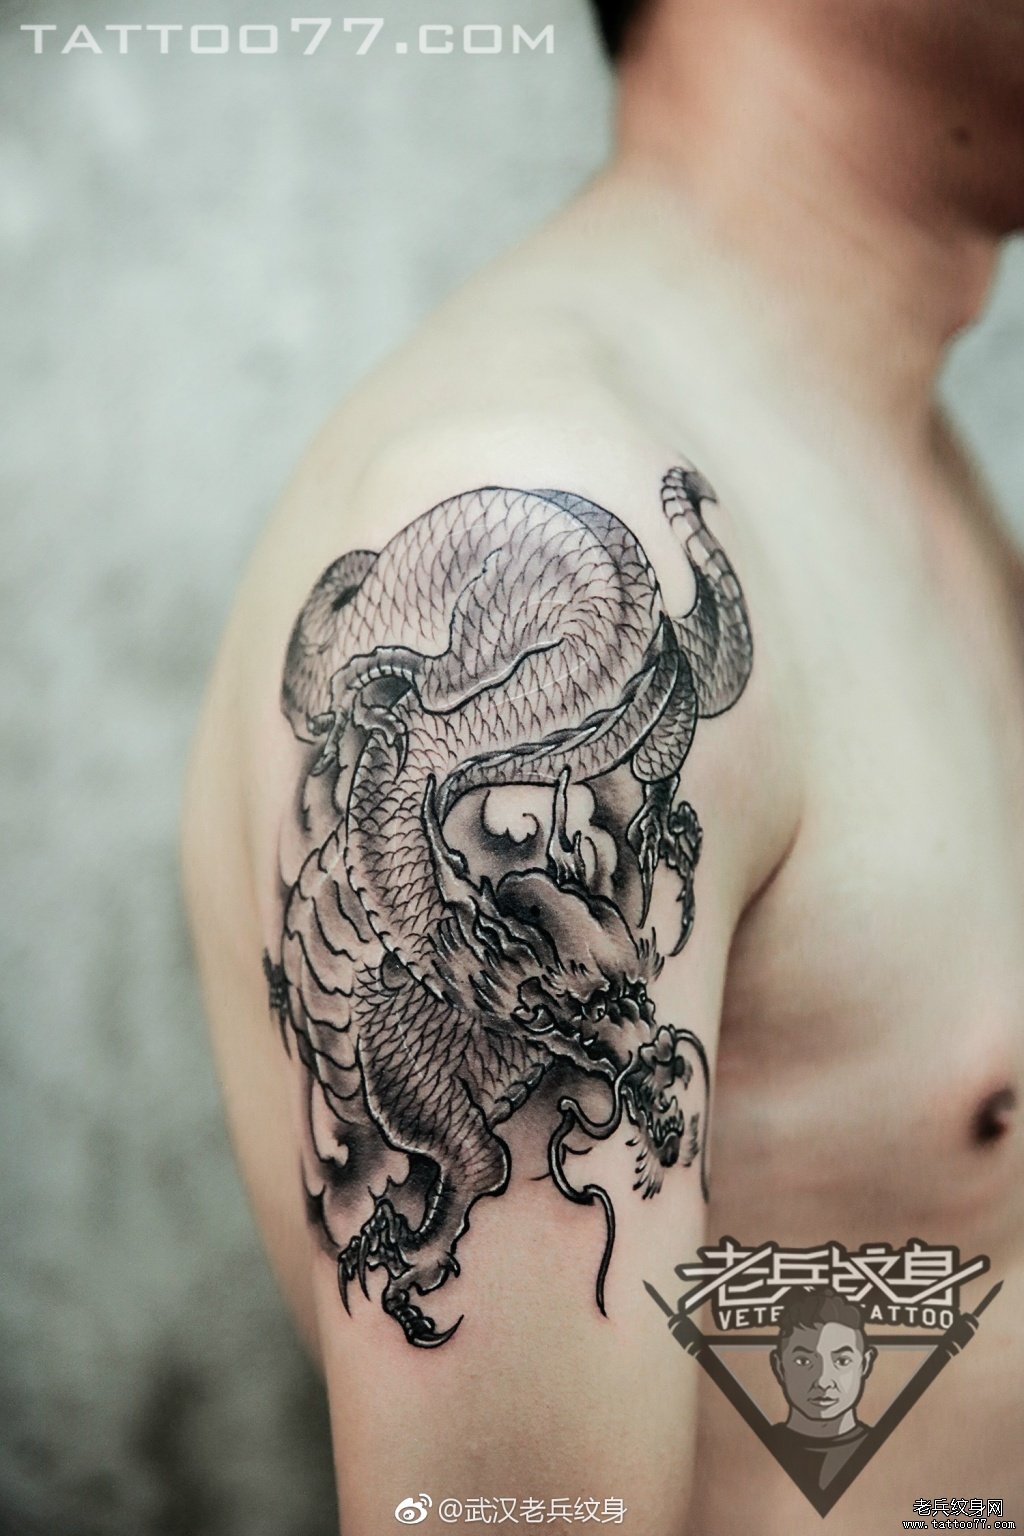 武汉纹身店打造的手臂龙纹身图案作品